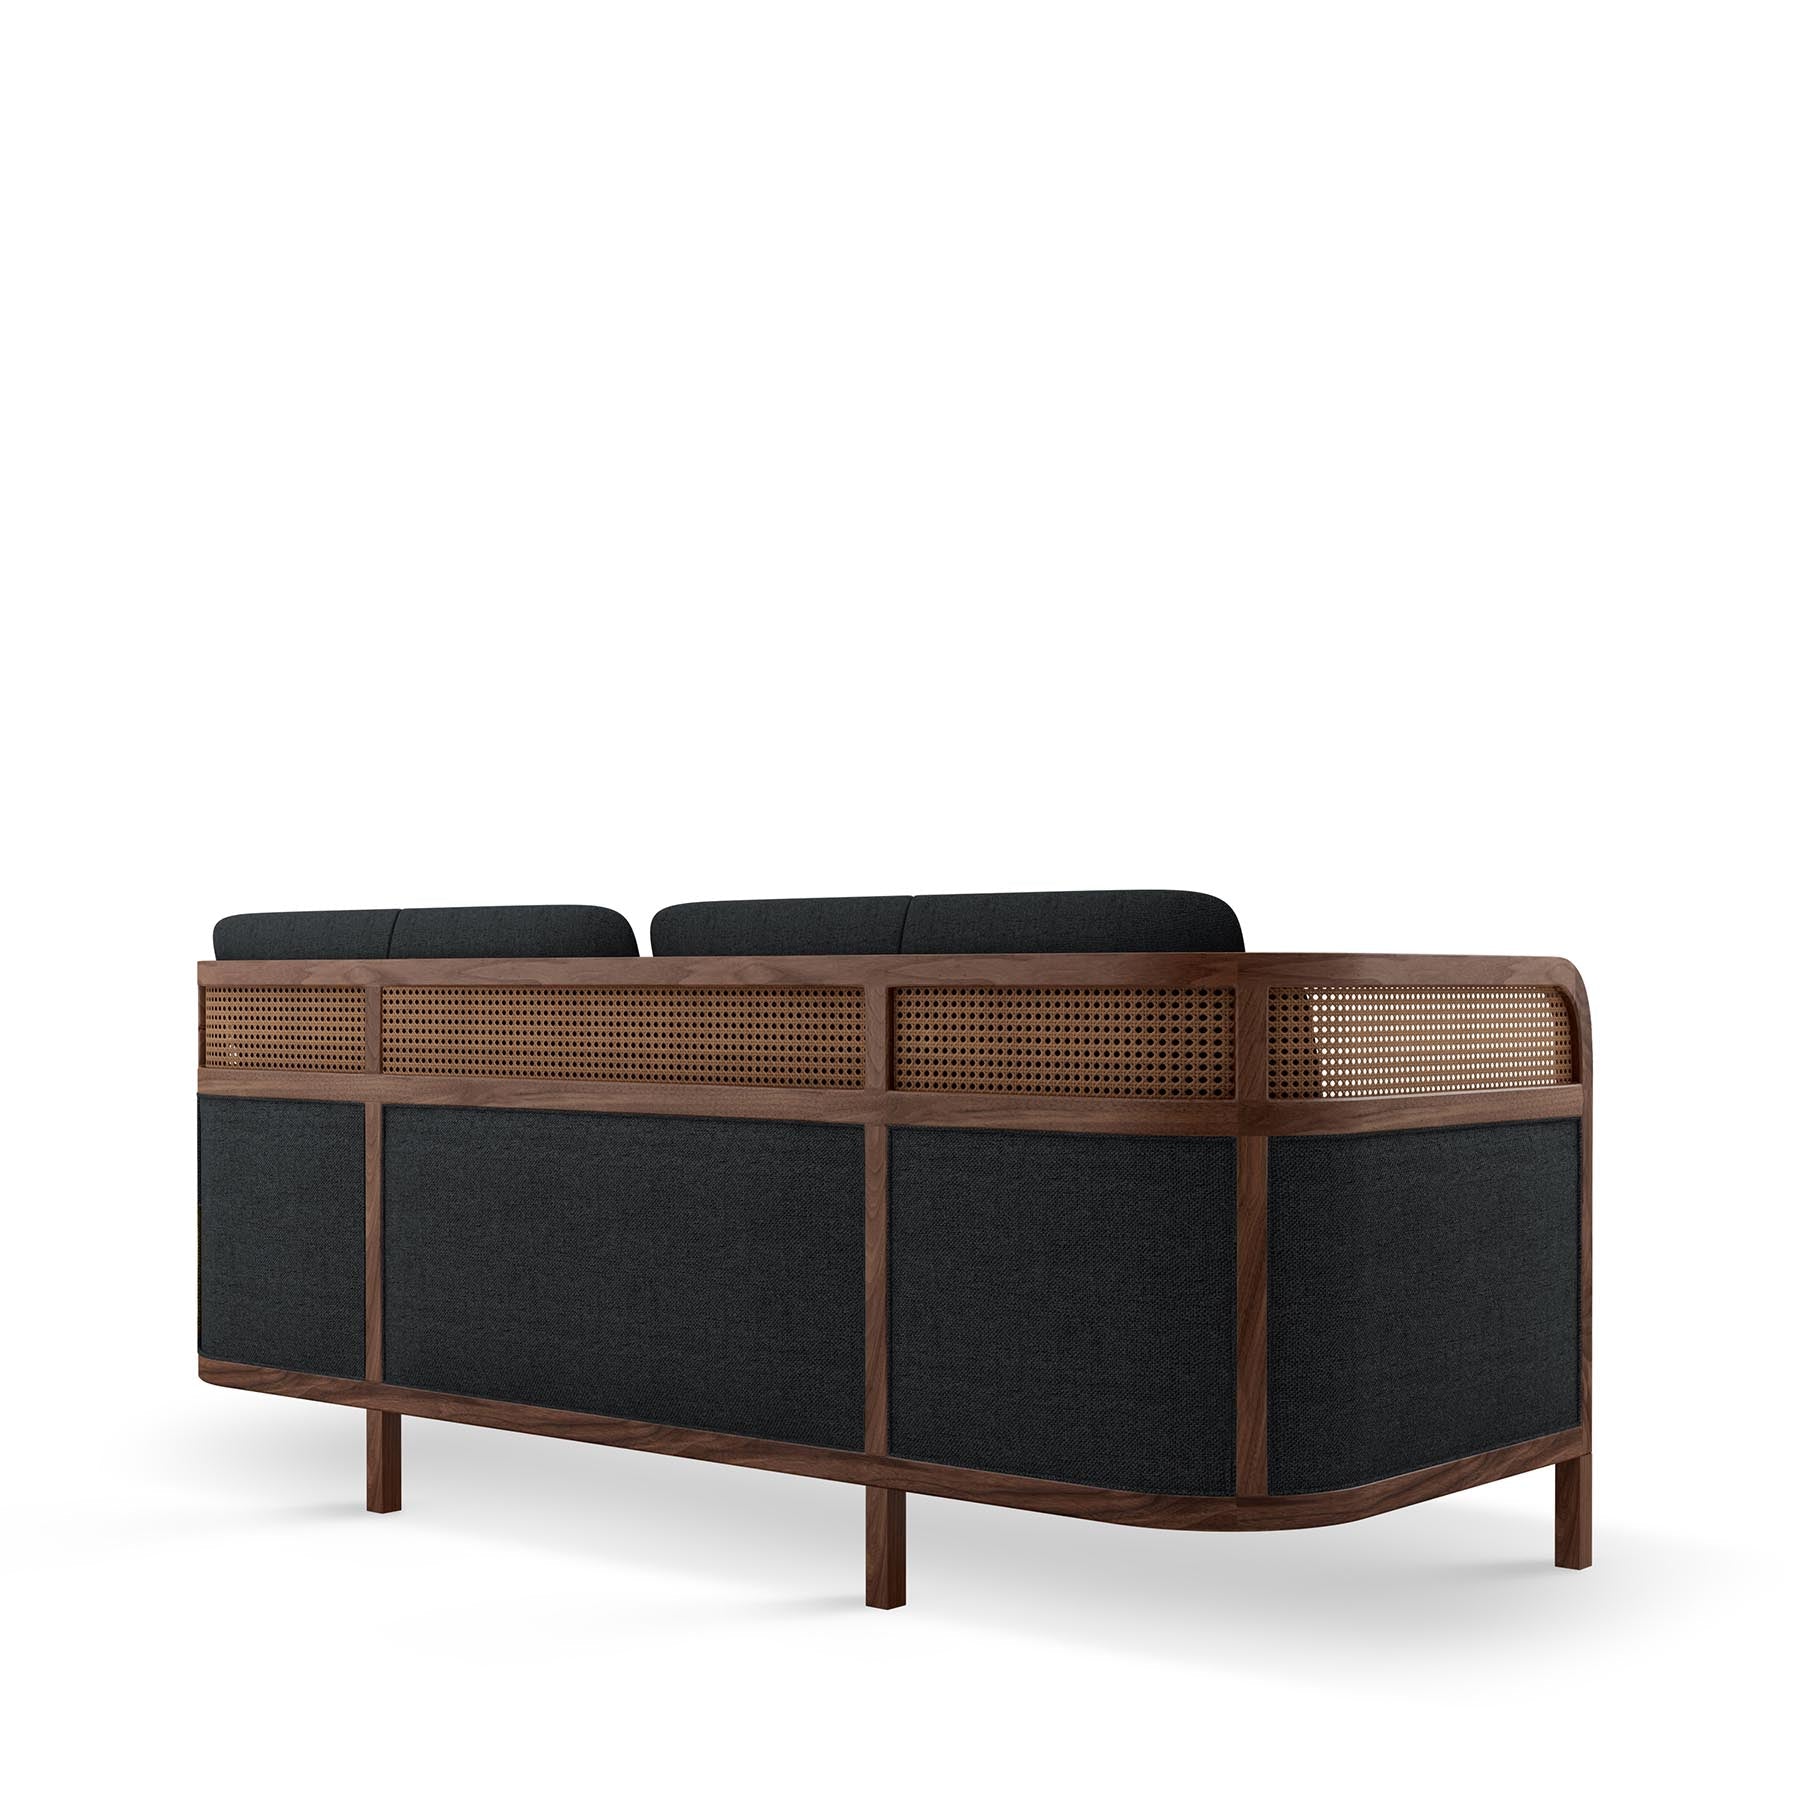 CROCKFORD - SOFA | Modern Furniture + Decor